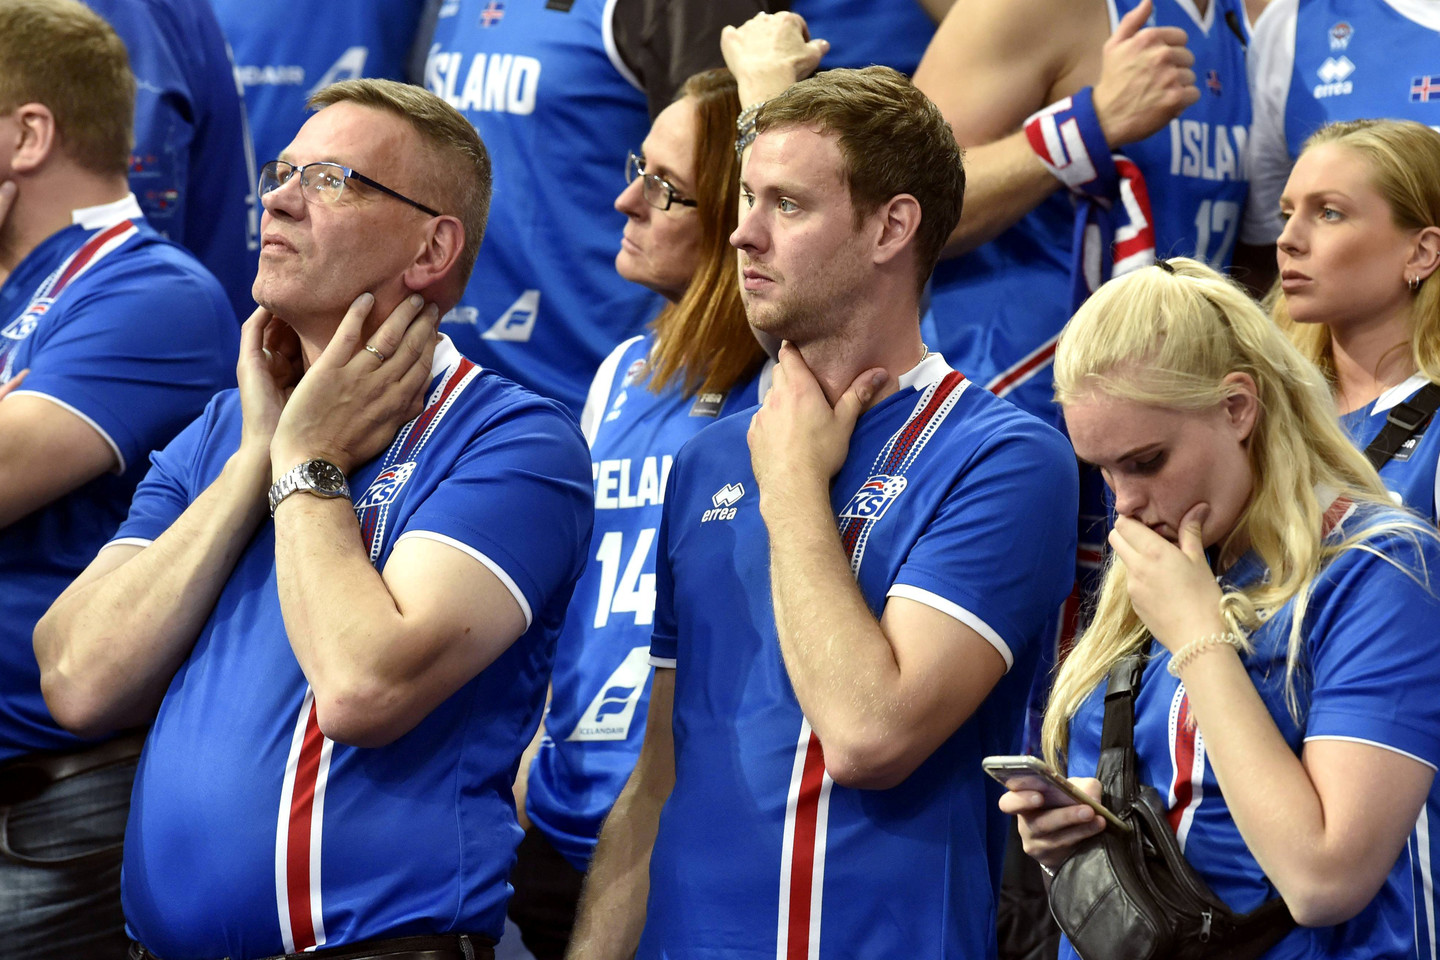  Islandai nesulaukė savo komandos pirmosios pergalės<br> Reuters/Scanpix nuotr.